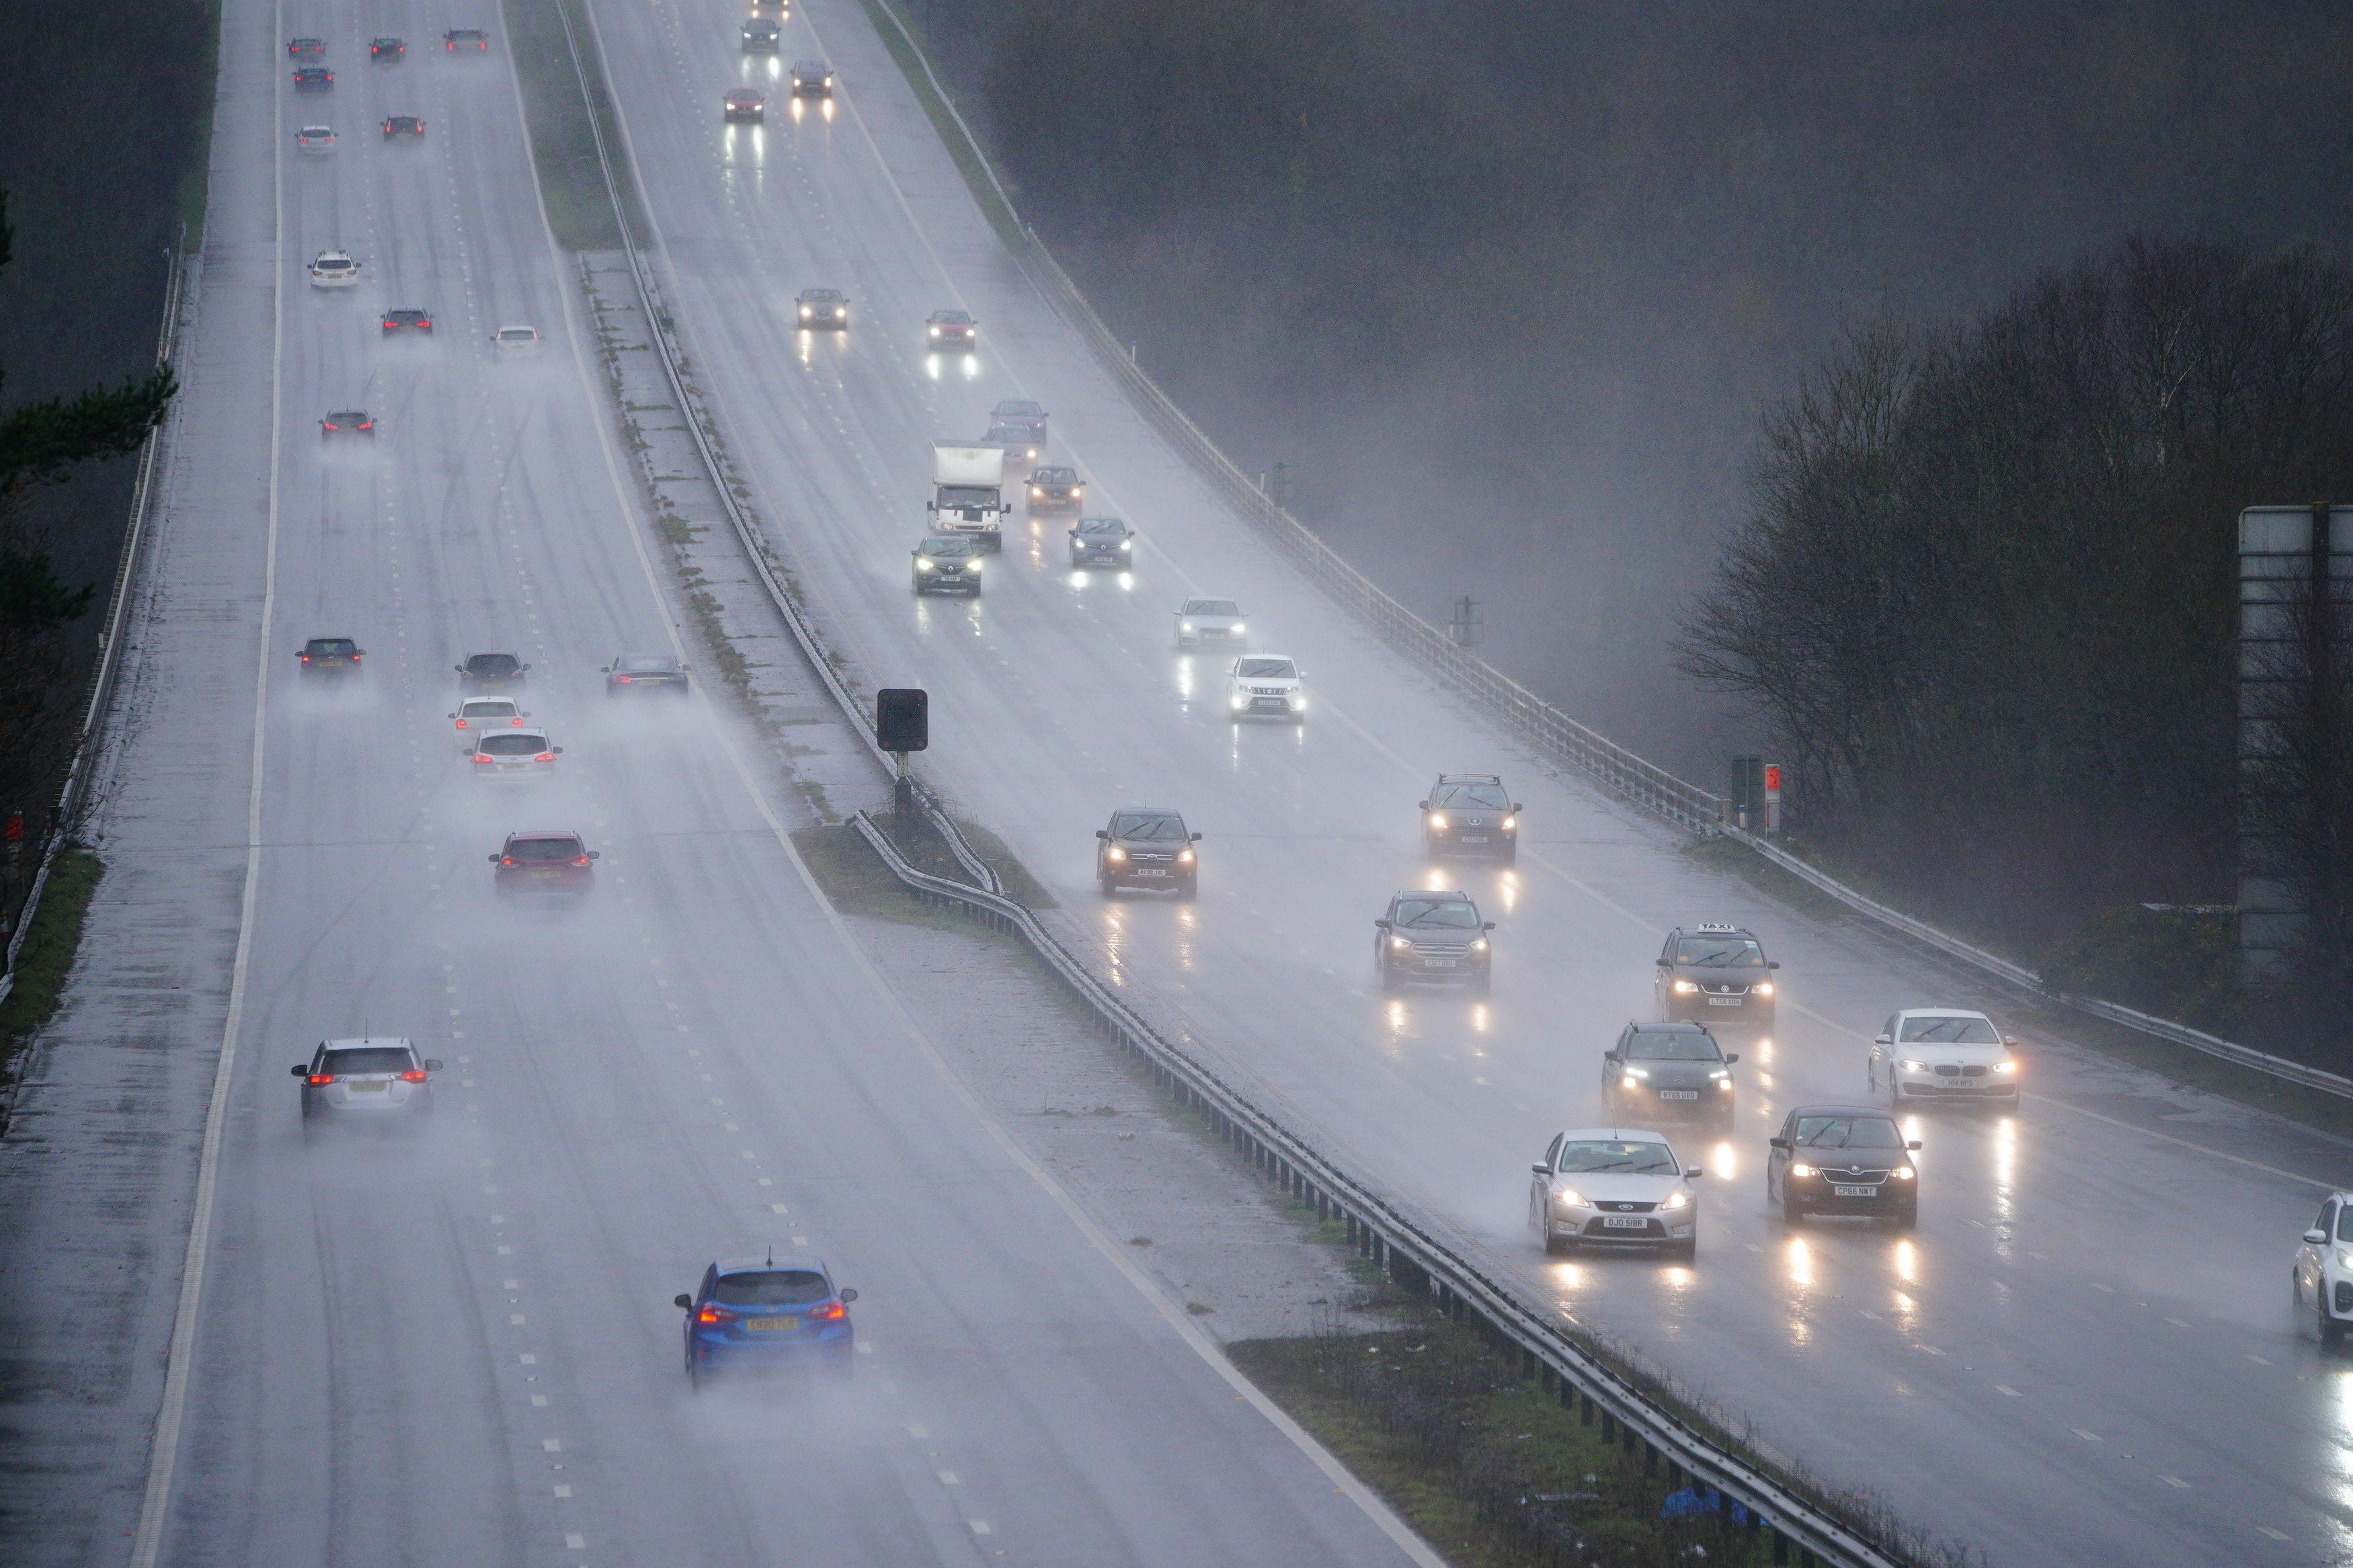 Traffic on the M4 motorway at Bridgend in Wales